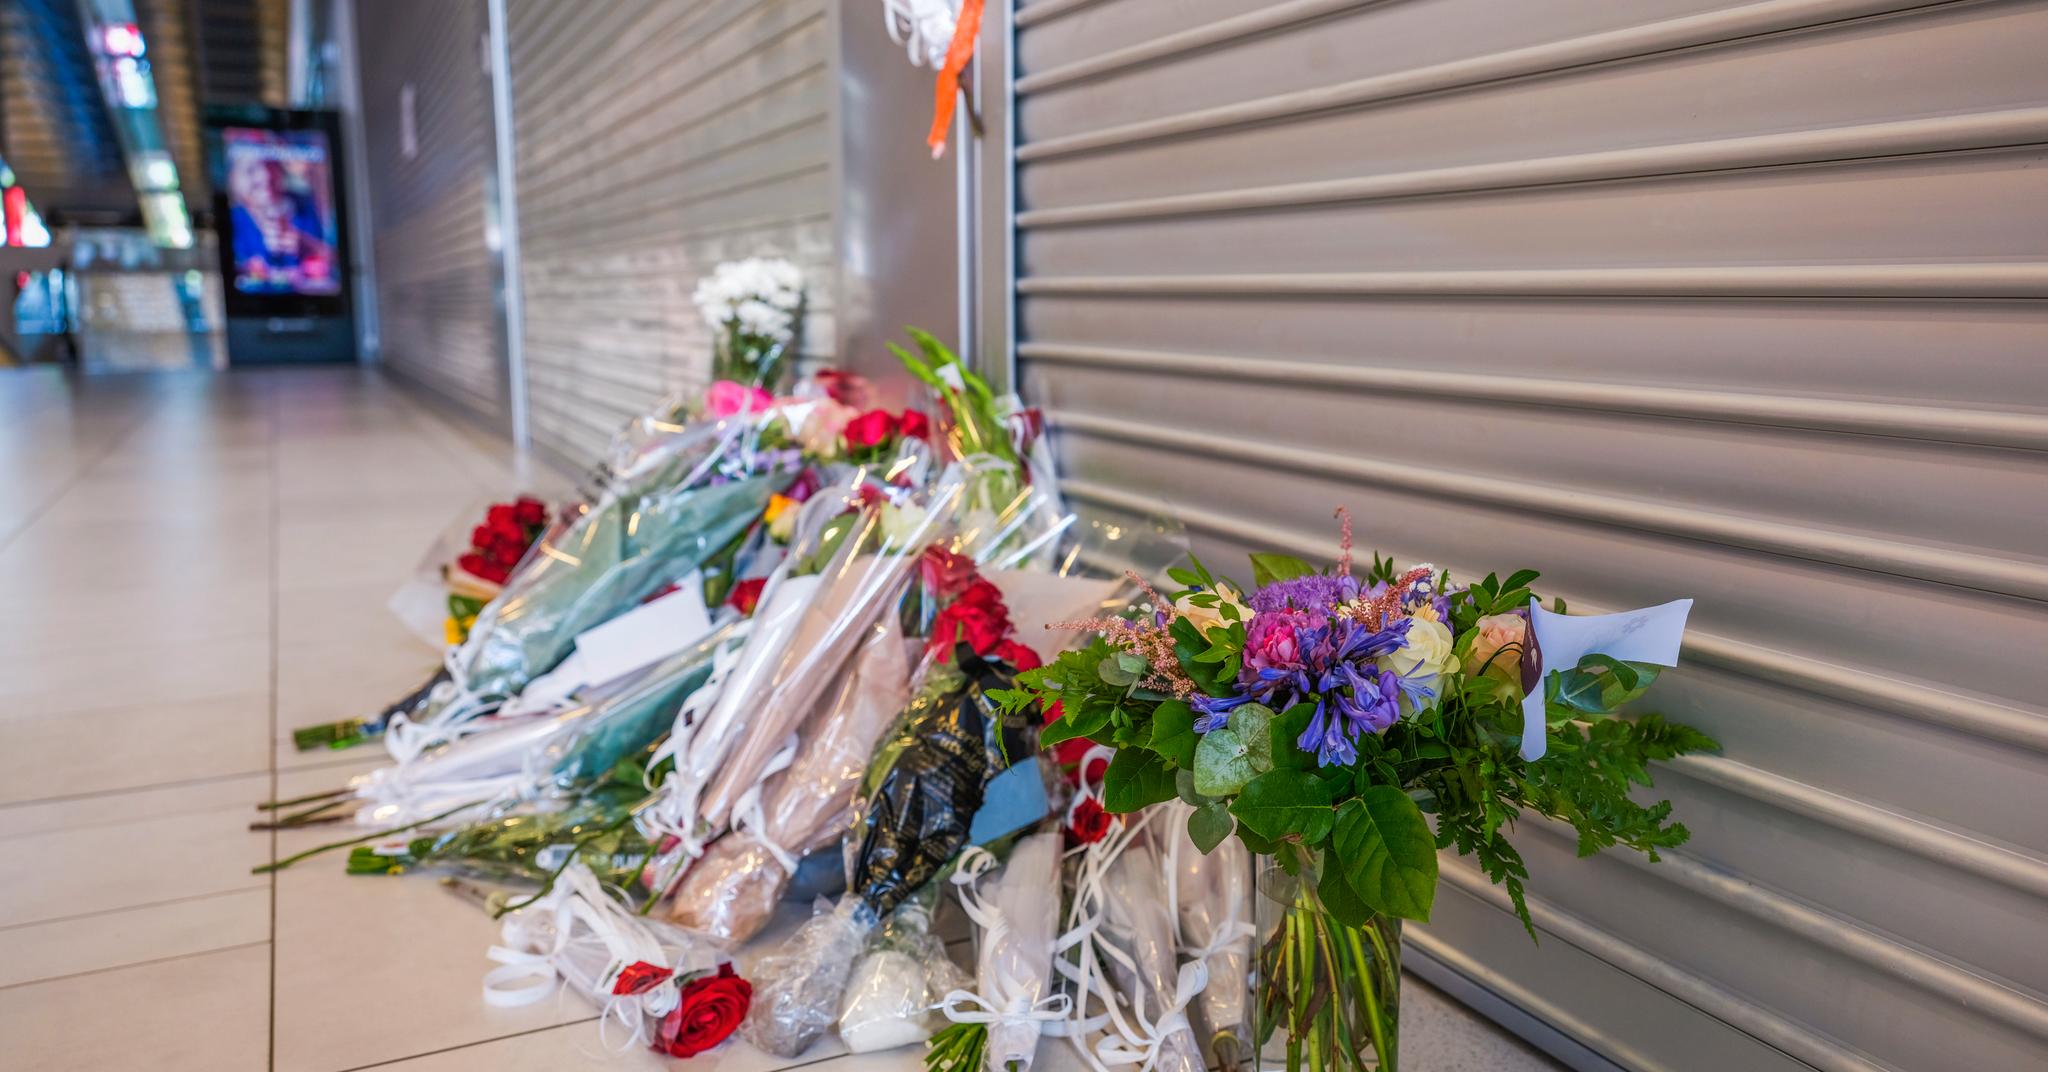 Blomster ble plassert ved Coop Obs på Sørlandssenteret i Kristiansand der 17 år gamle Marie Skuland døde av skadene etter knivstikking i juli i fjor.